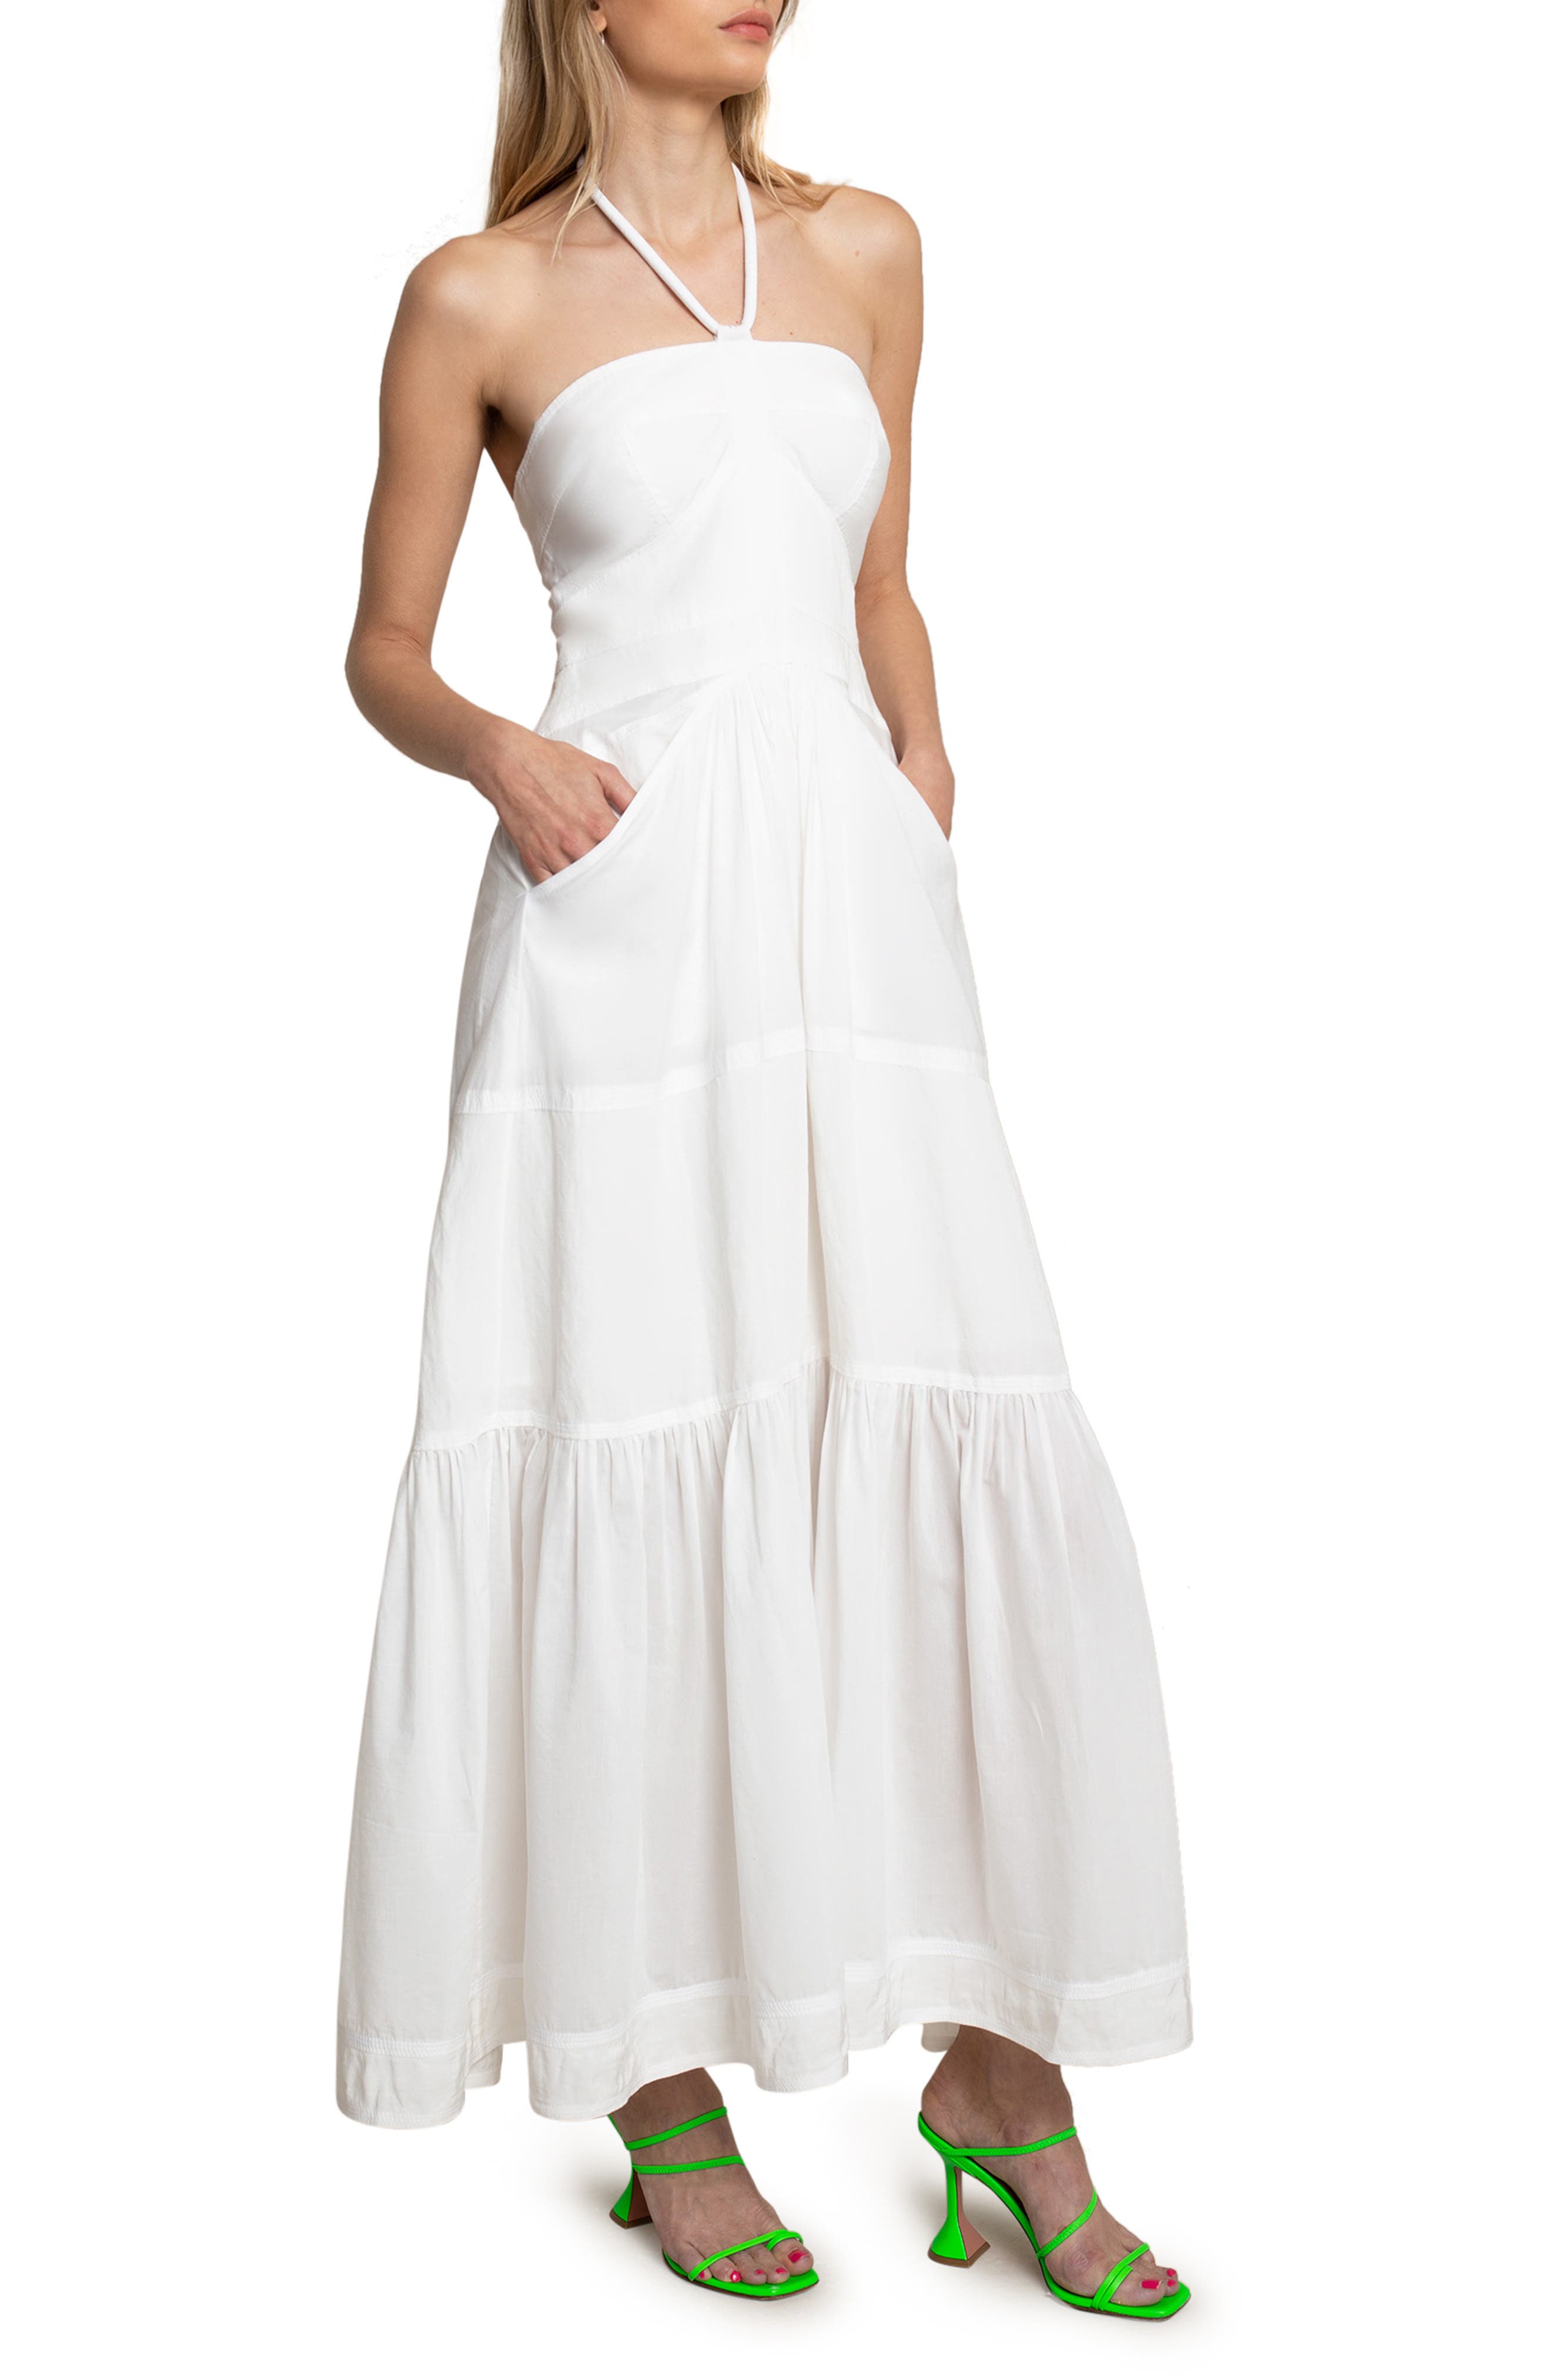 Women's White Dresses | Nordstrom